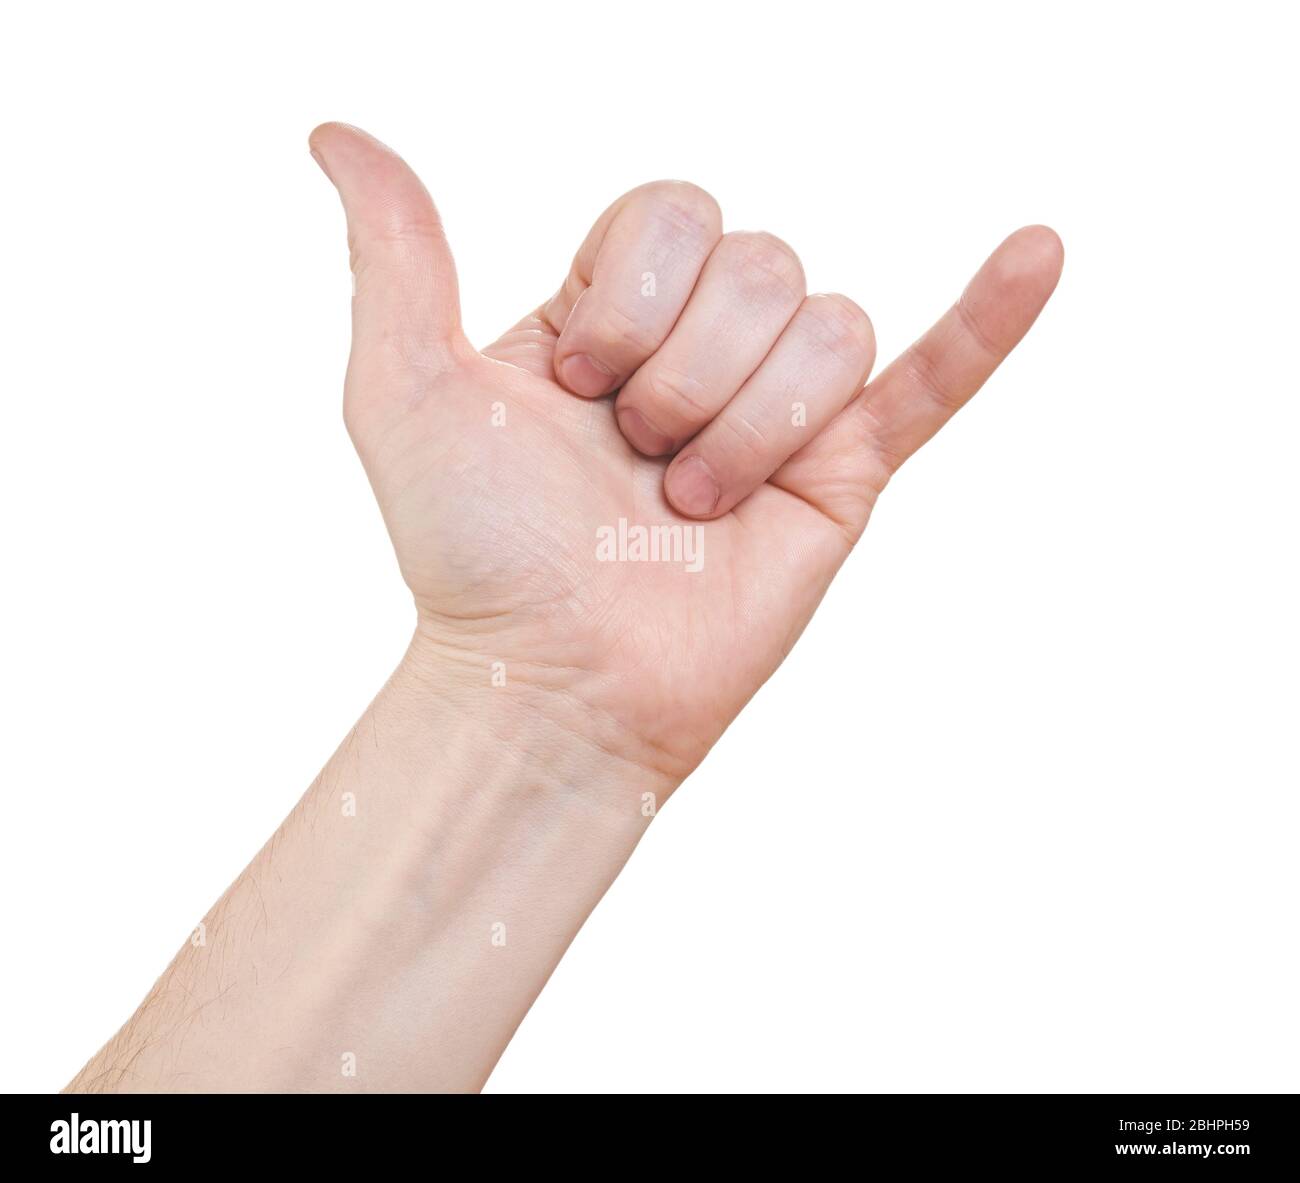 Die Hand des Mannes zeigt ein Schild, um einen Anruf zu tätigen. Isoliert auf weißem Hintergrund. Stockfoto